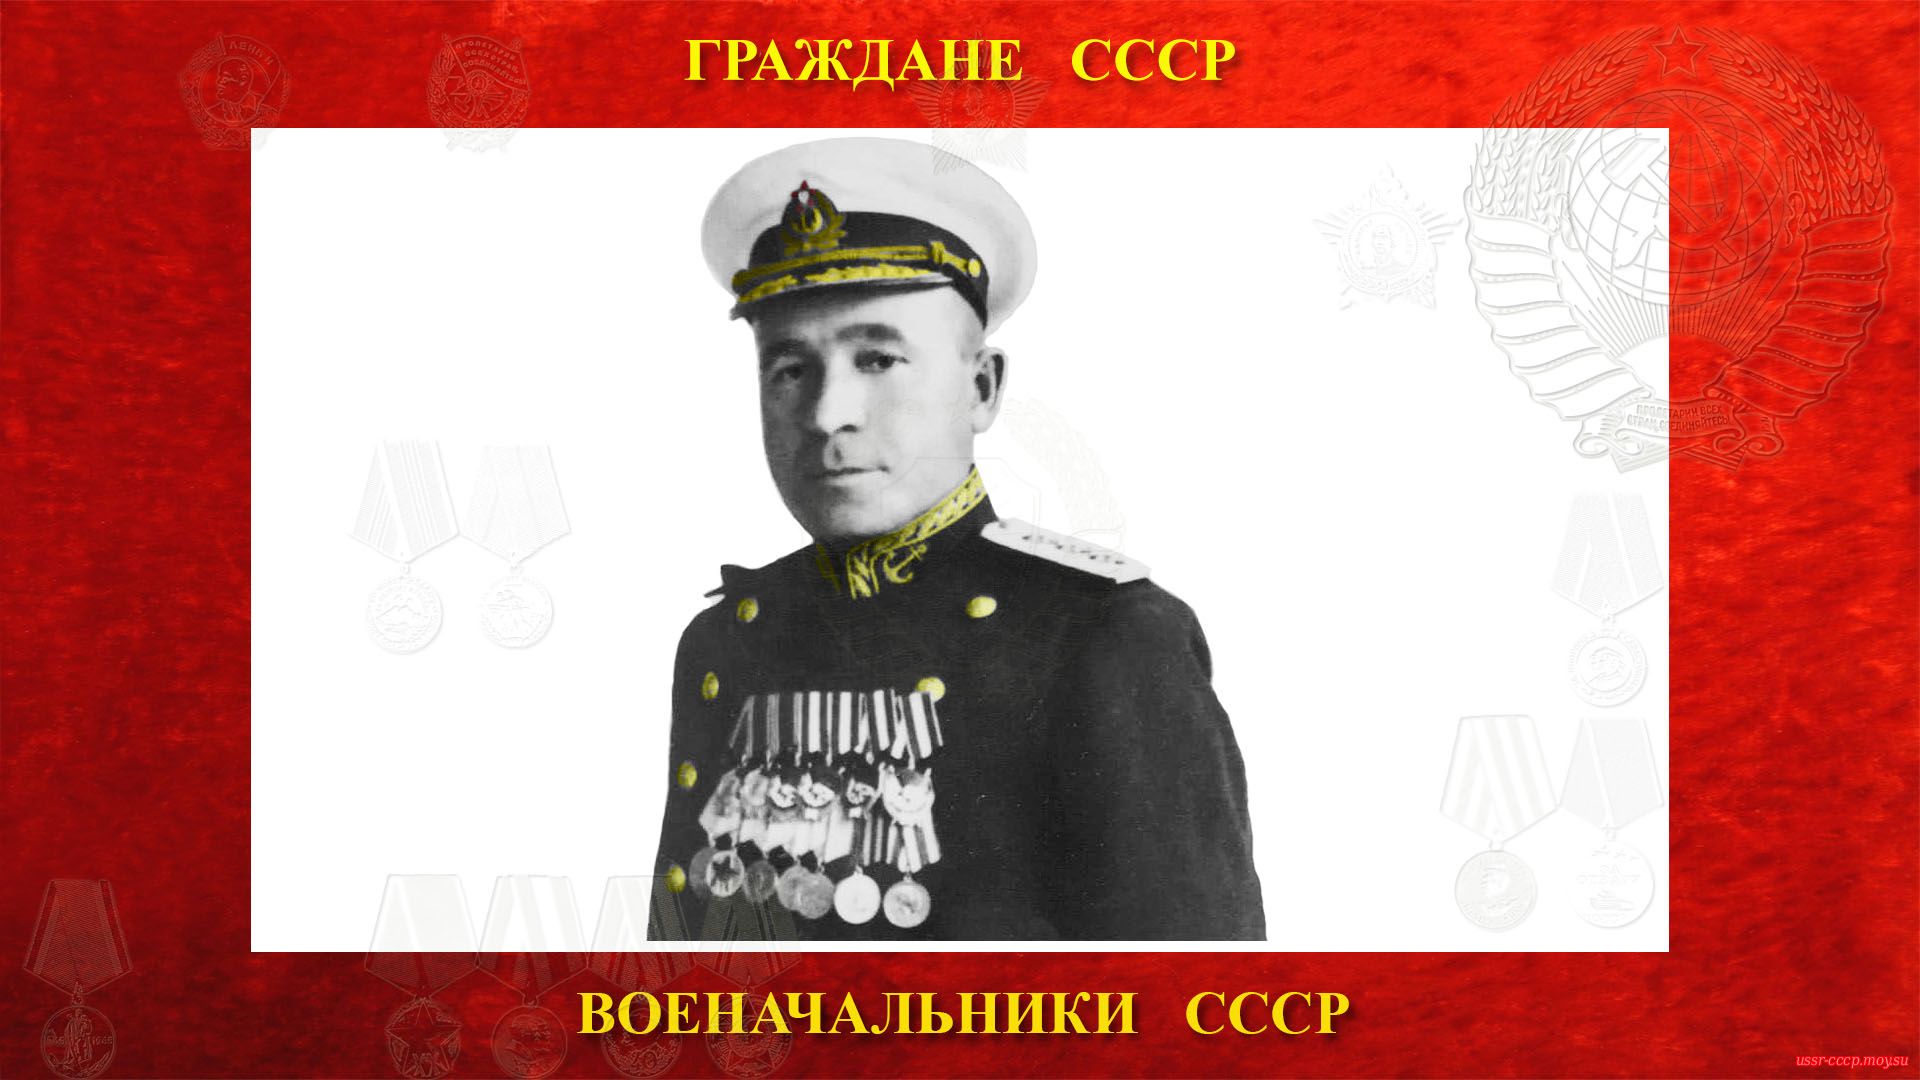 11 мая 1949 года Басистого Николая Ефремовича произвели в адмиралы.